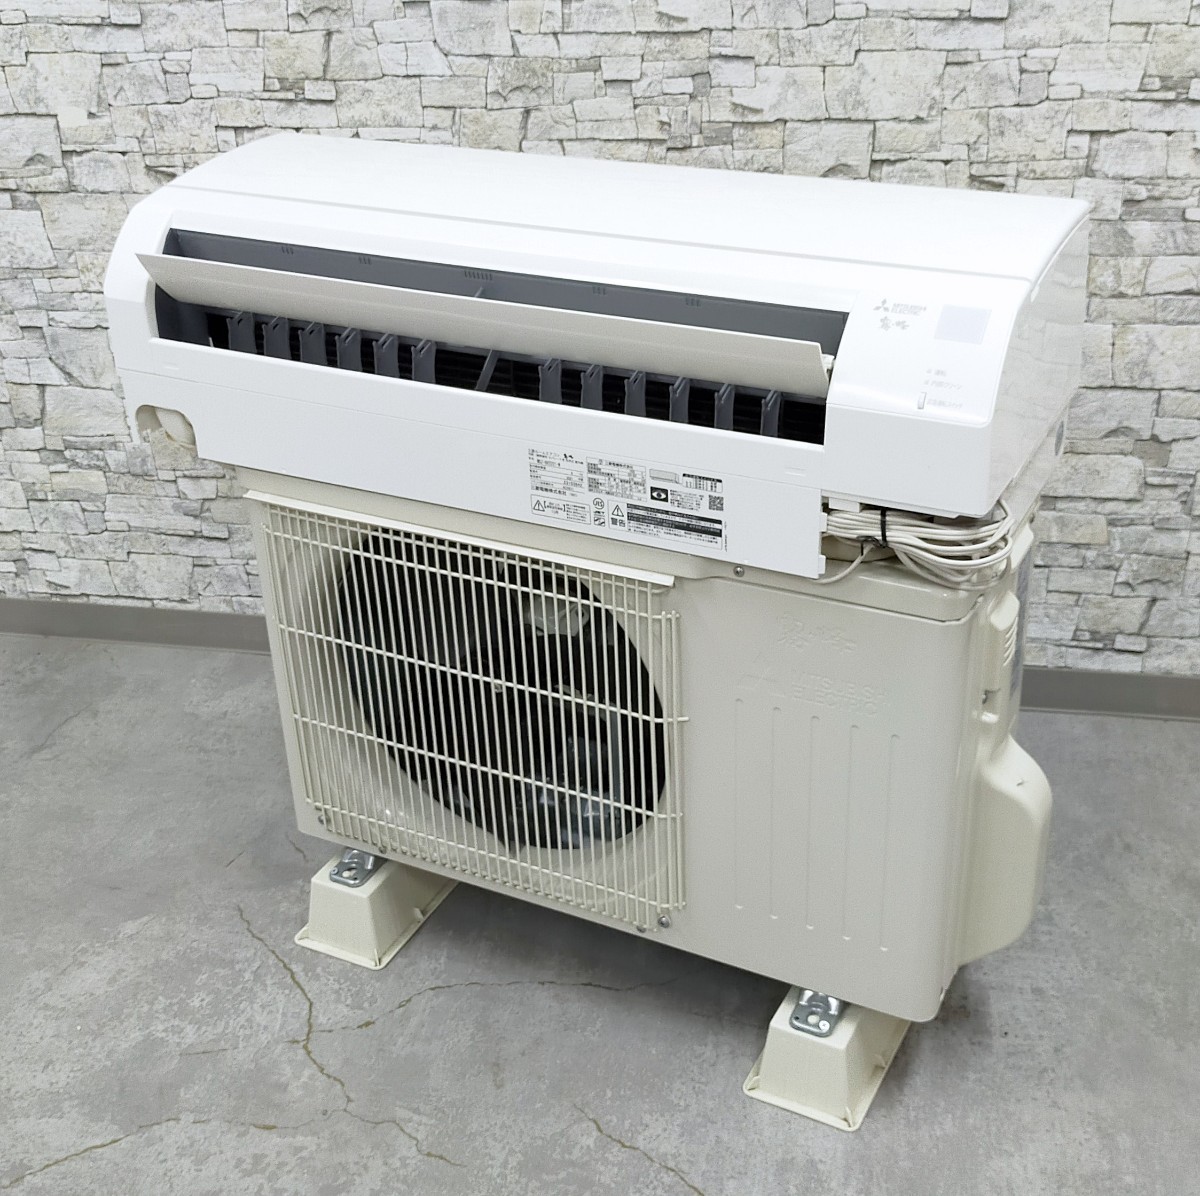 冷暖房/空調 エアコン 三菱電機 霧ヶ峰 MSZ-GV2221-W [ピュアホワイト] オークション比較 